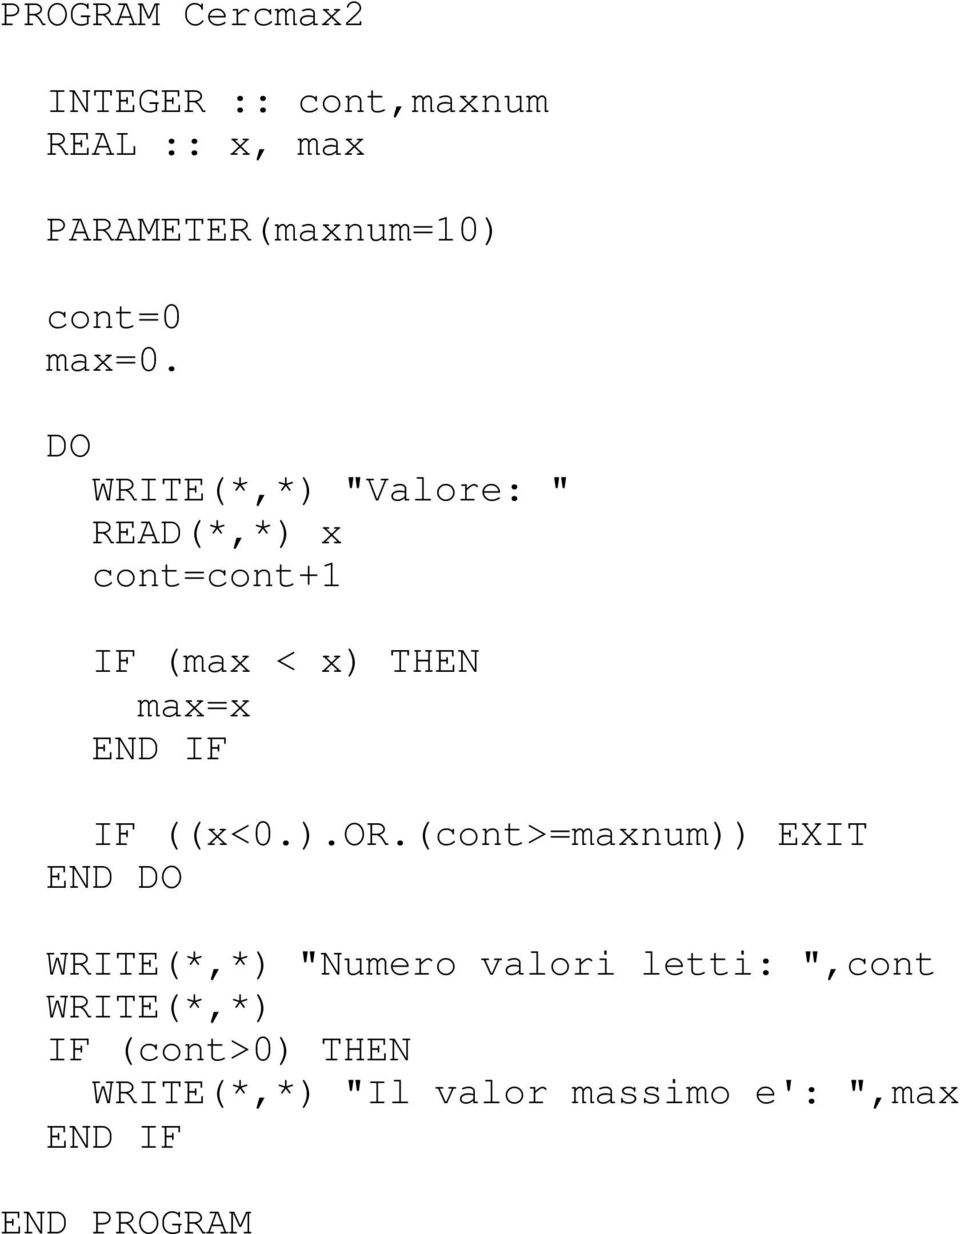 (cont>=maxnum)) EXIT WRITE(*,*) "Numero valori letti: ",cont